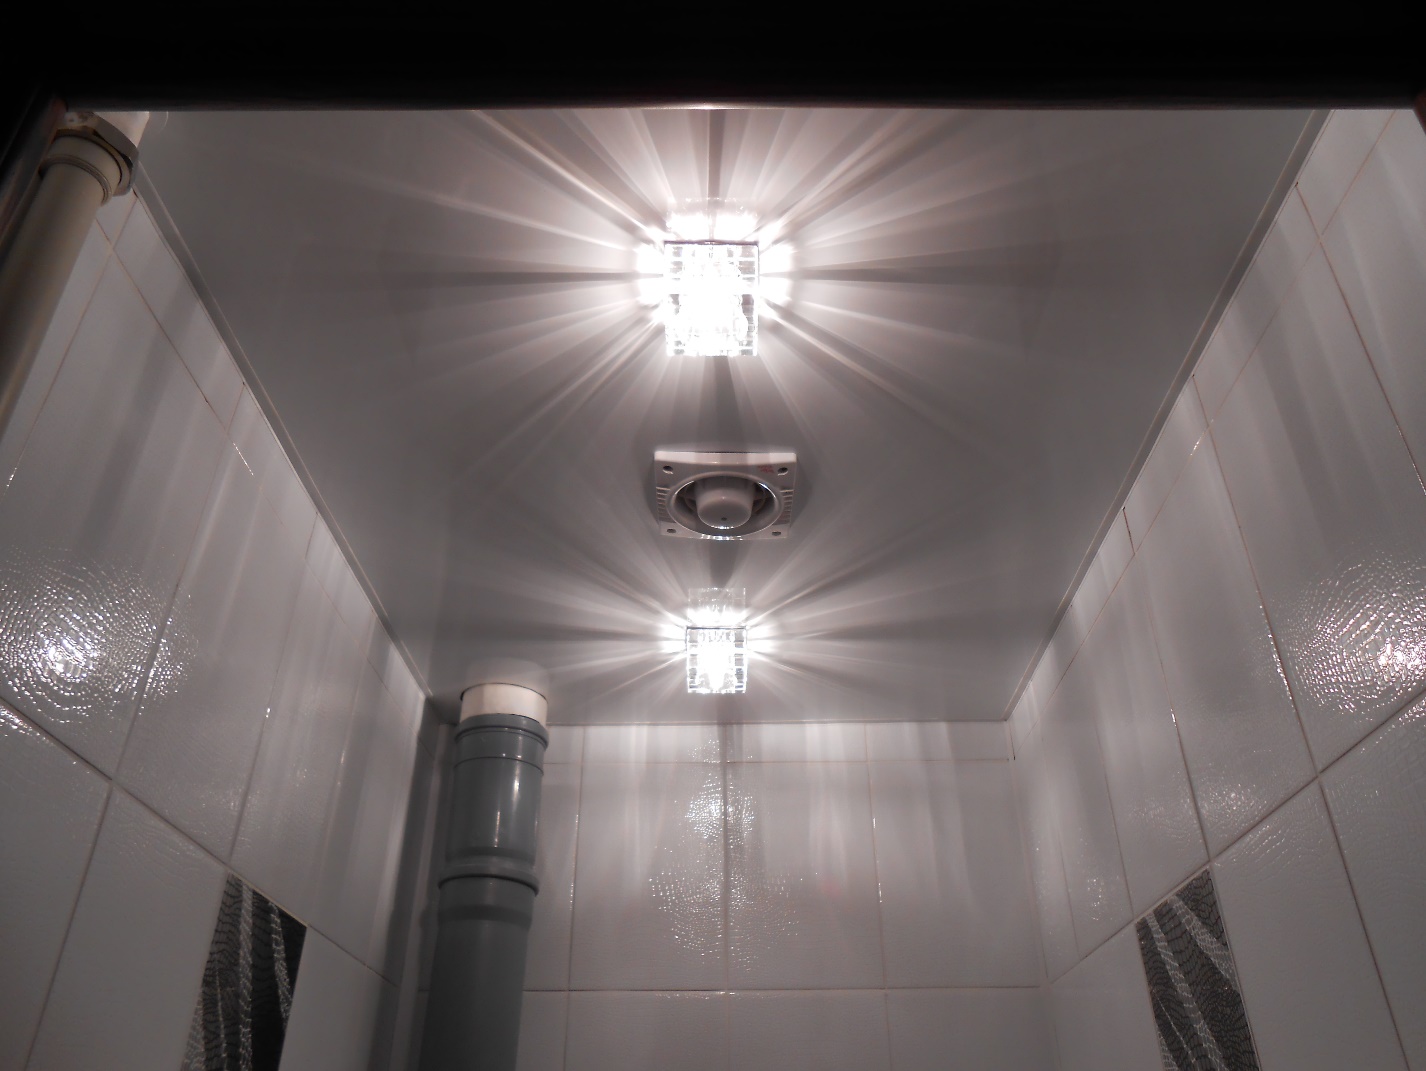 Потолок в туалете: виды по материалу, конструкции, фактуре, цвету, дизайн, освещение